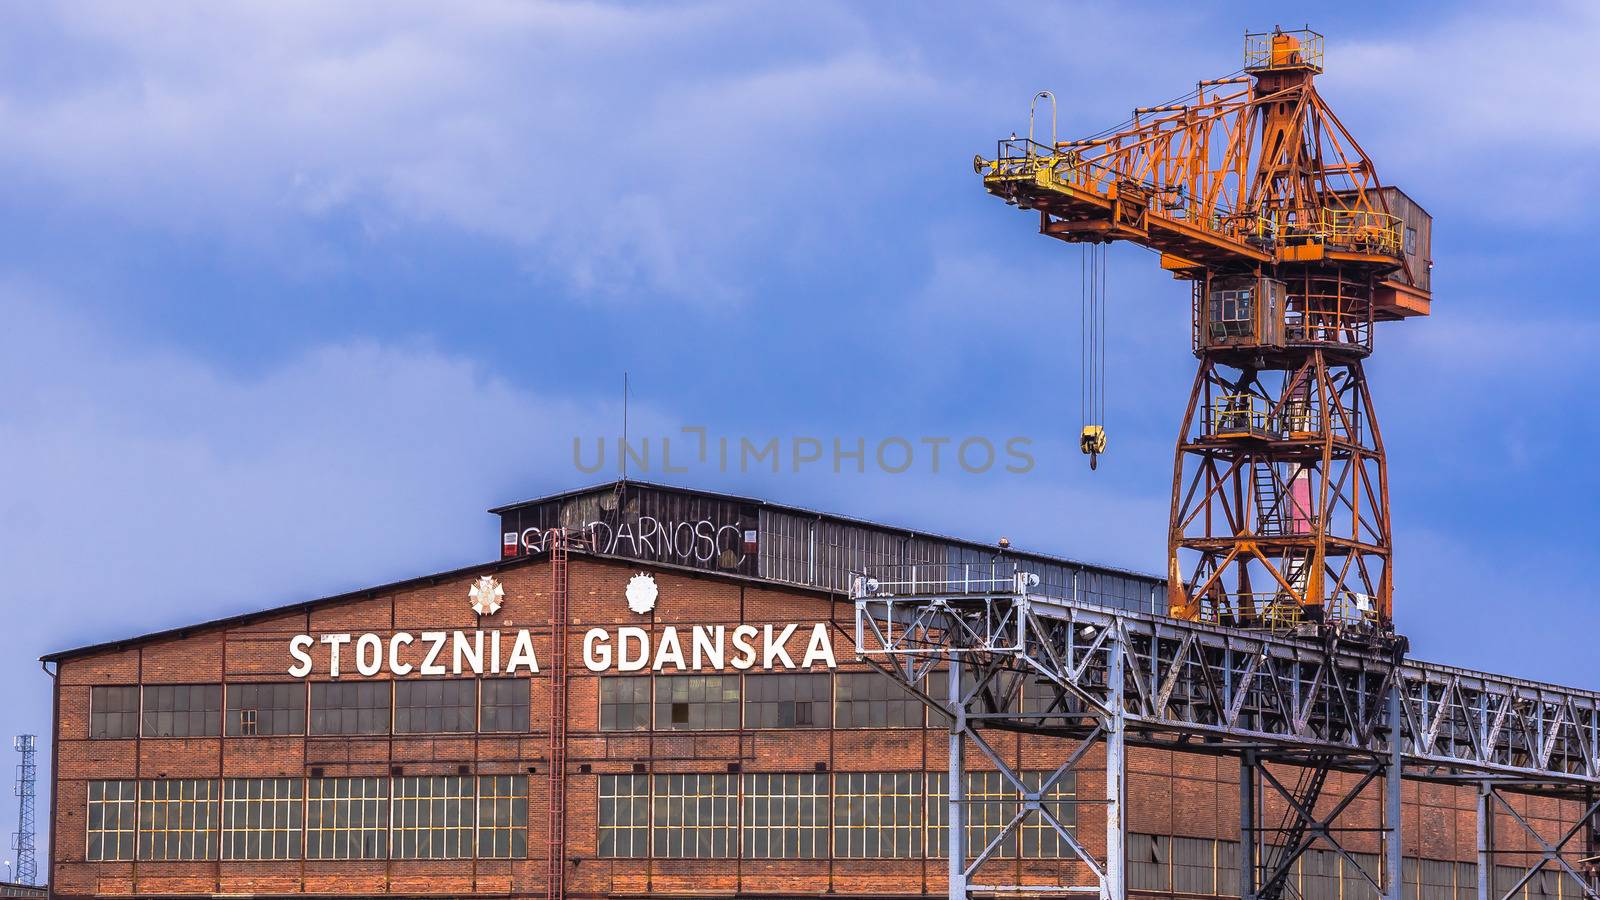 Gdansk Shipyard by pawel_szczepanski